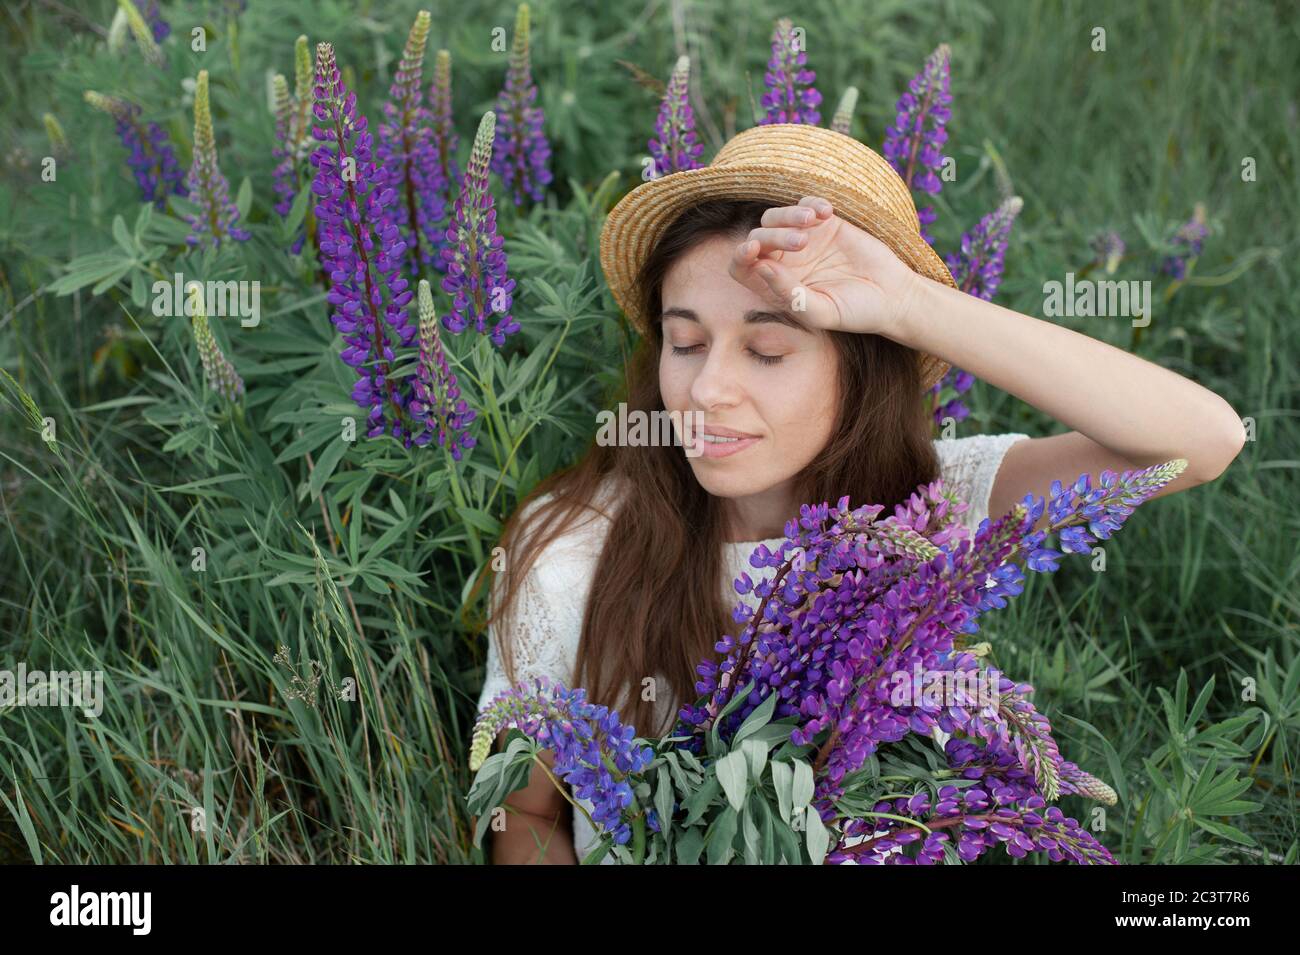 Schöne romantische Frau mit Blumenstrauß Lupinen lächelt freudig in weißem Kleid und Hut sitzt im Feld der lila Lupine Blumen. Weicher selektiver Fokus Stockfoto